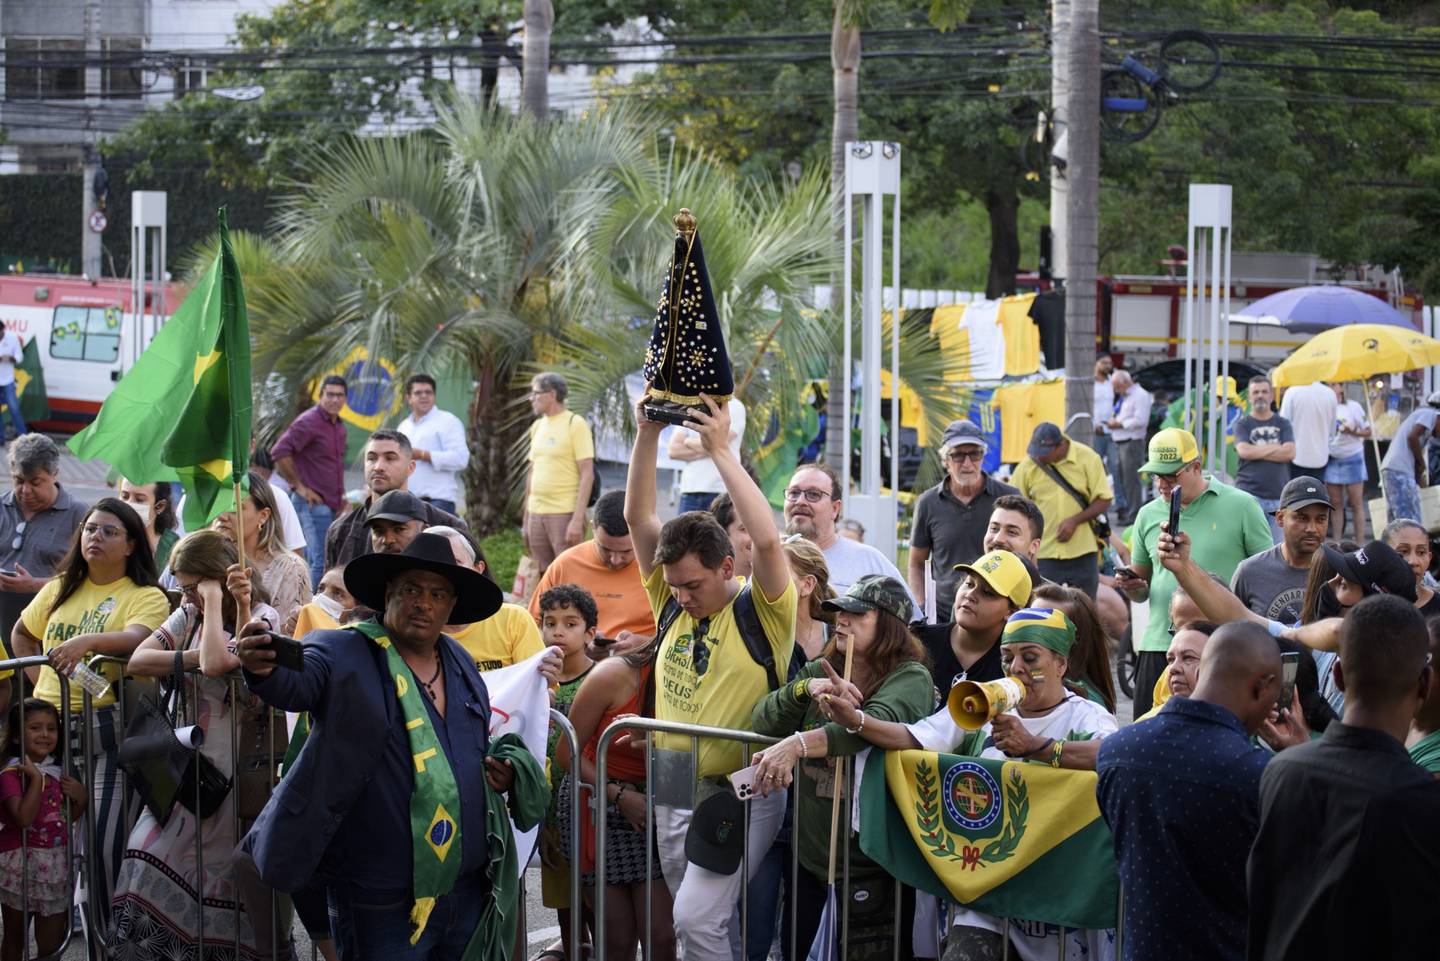 Los partidarios de Jair Bolsonaro, el presidente de Brasil, se reúnen antes de un evento en Belo Horizonte, estado de Minas Gerais, Brasil, el viernes 14 de octubre de 2022.